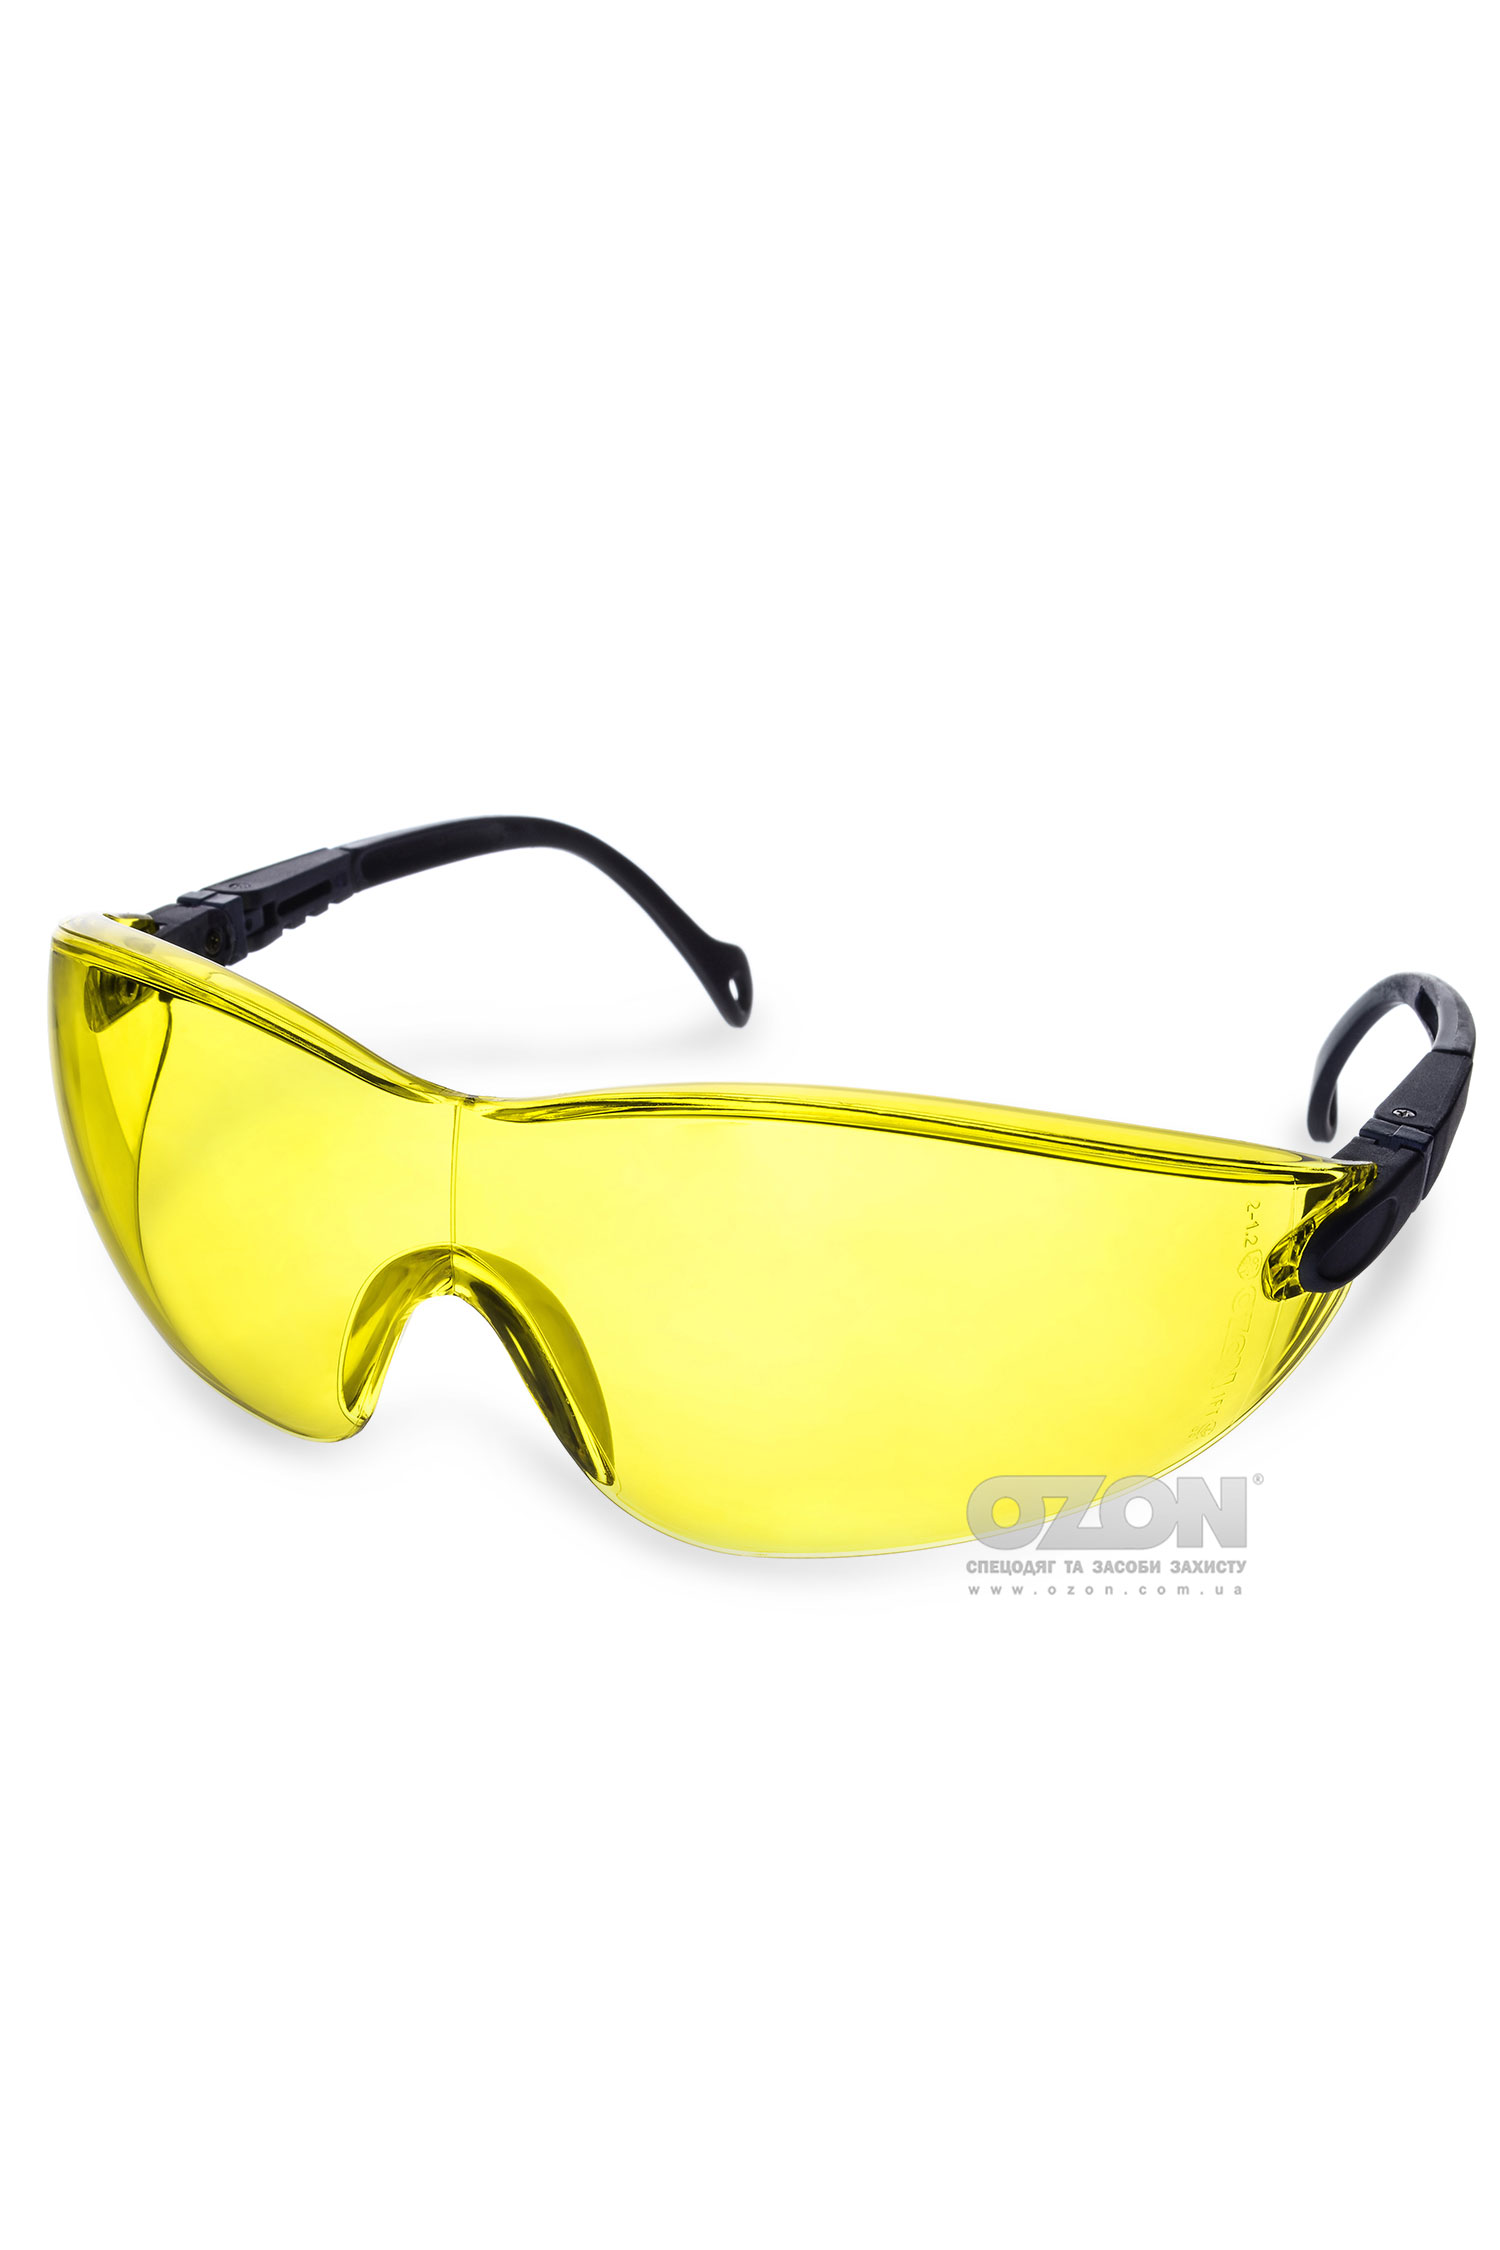 Захисні окуляри OZON™ 7-051 A/F, жовті - Фото 1